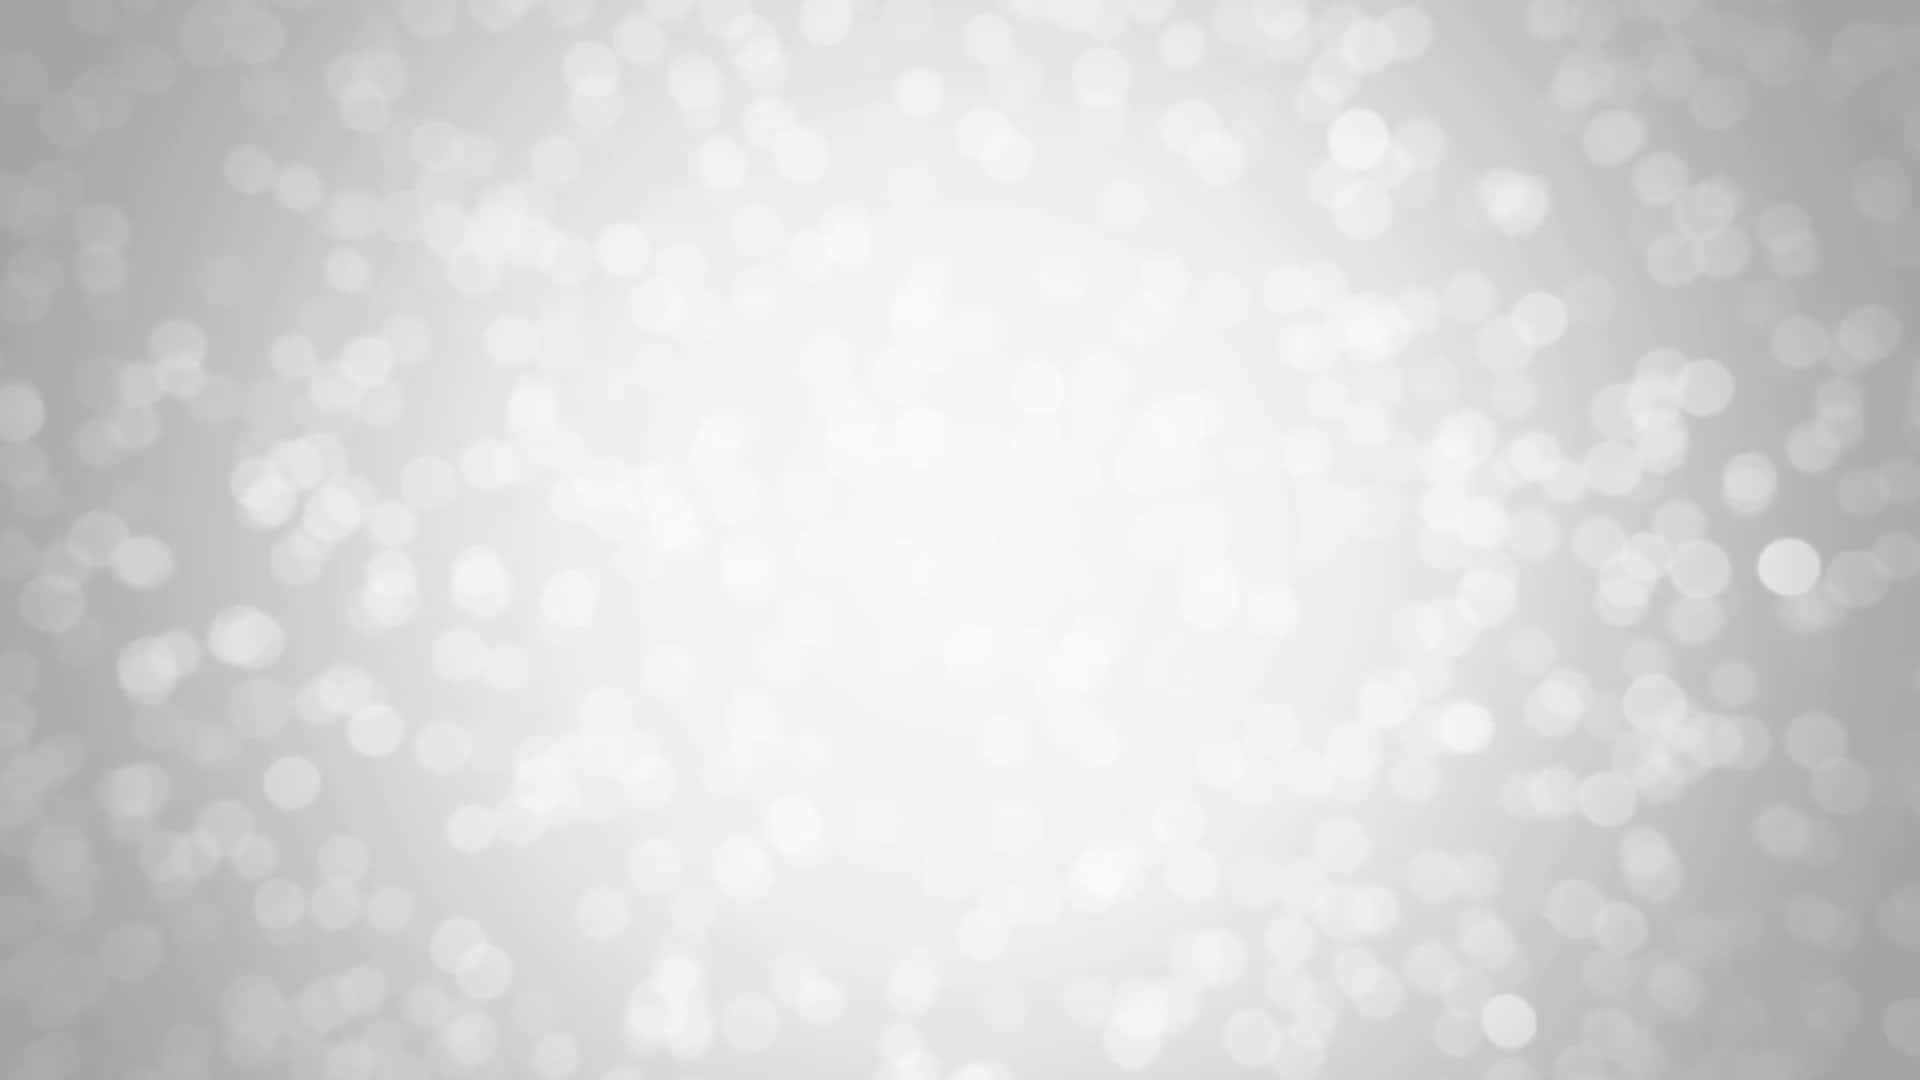 100+] White Glitter Backgrounds